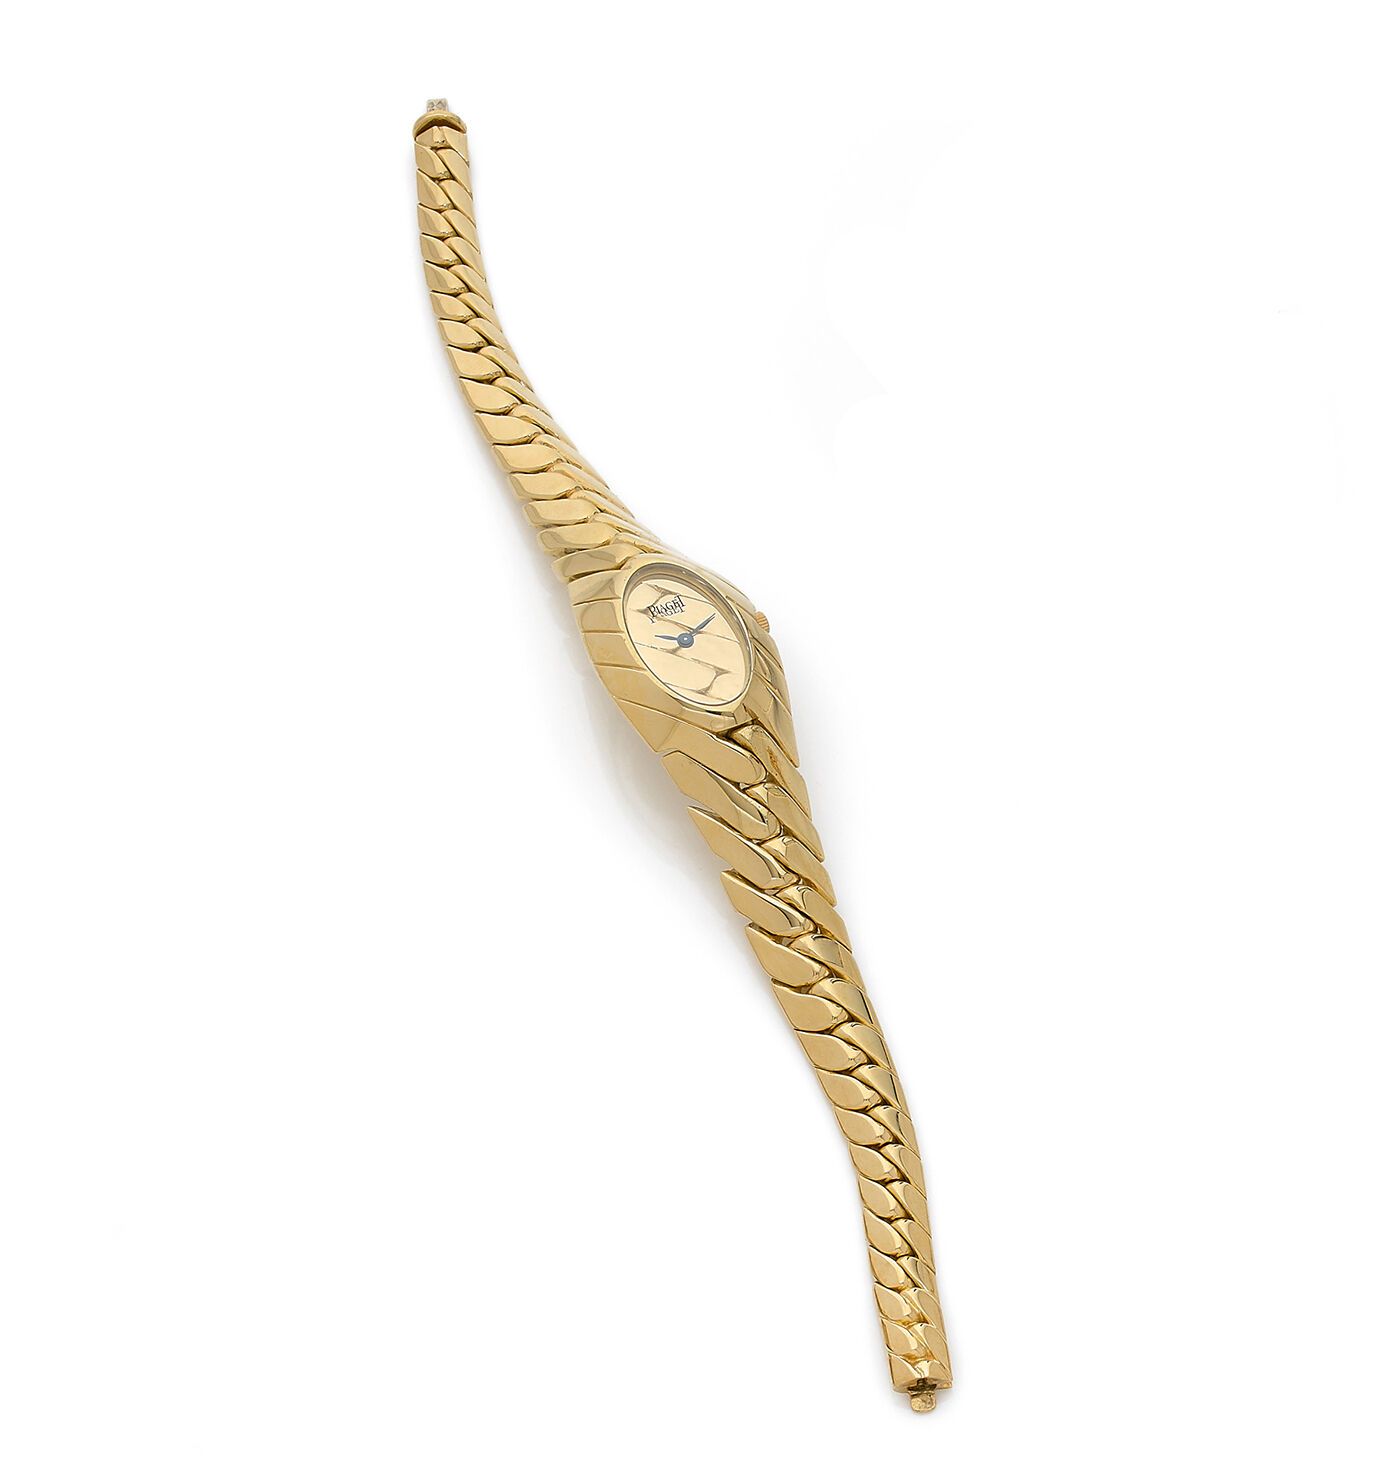 PIAGET PIAGET
Reloj de señora con brazalete de oro de 18 quilates con eslabones &hellip;